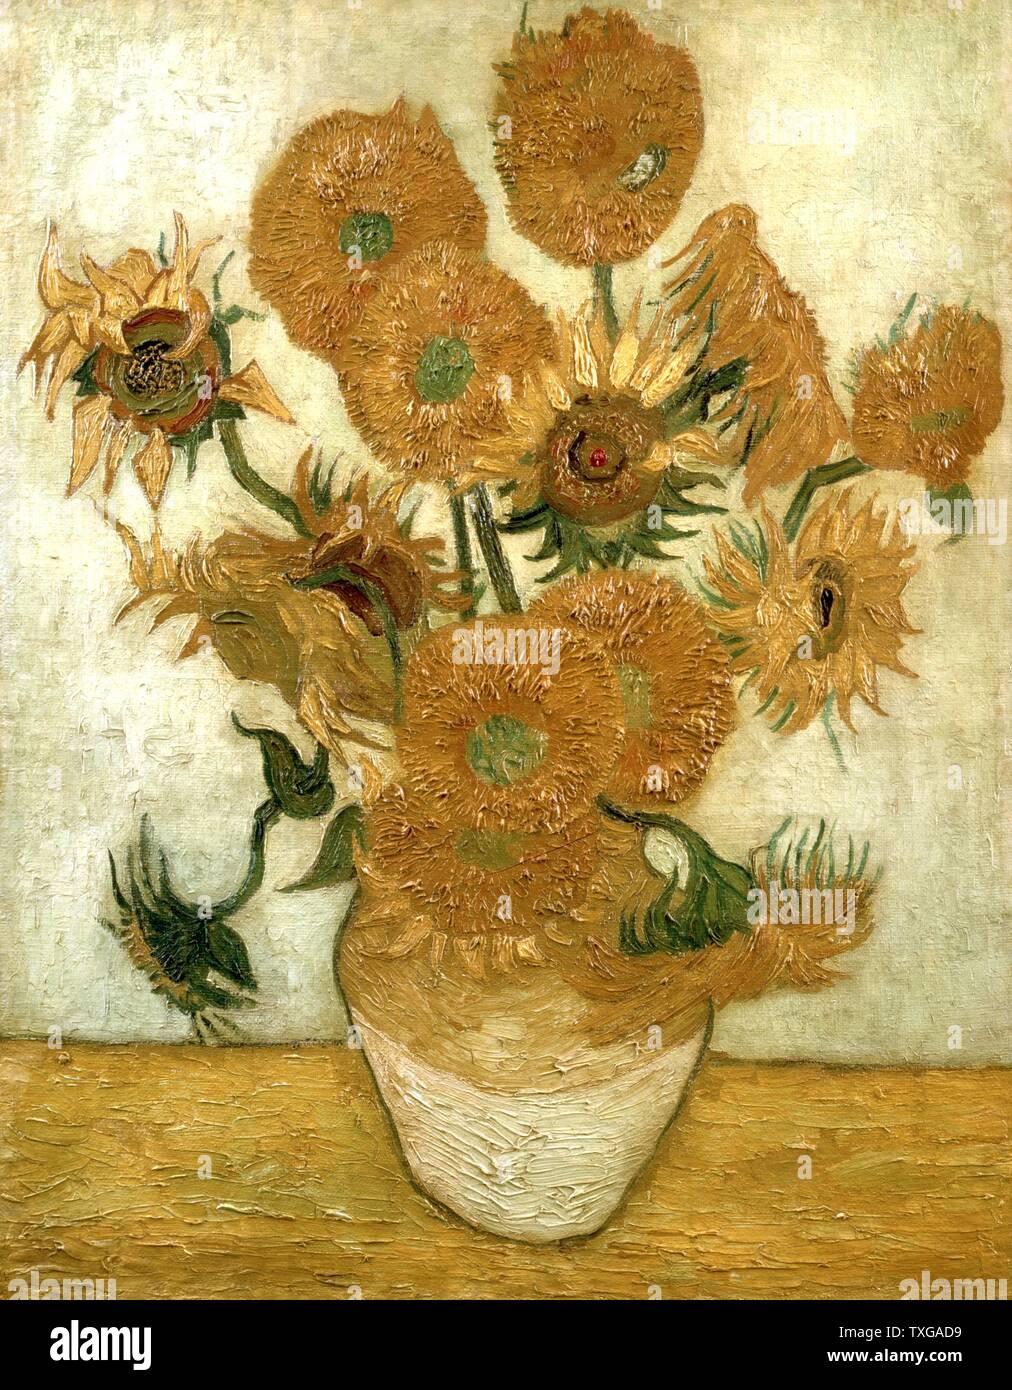 L'école Néerlandaise de Vincent van Gogh Vase avec quinze tournesols (Les répétitions) Janvier 1889 Huile sur toile (100,5 x 76,5 cm) Tokyo, Sompo Nipponkoa Museum Banque D'Images